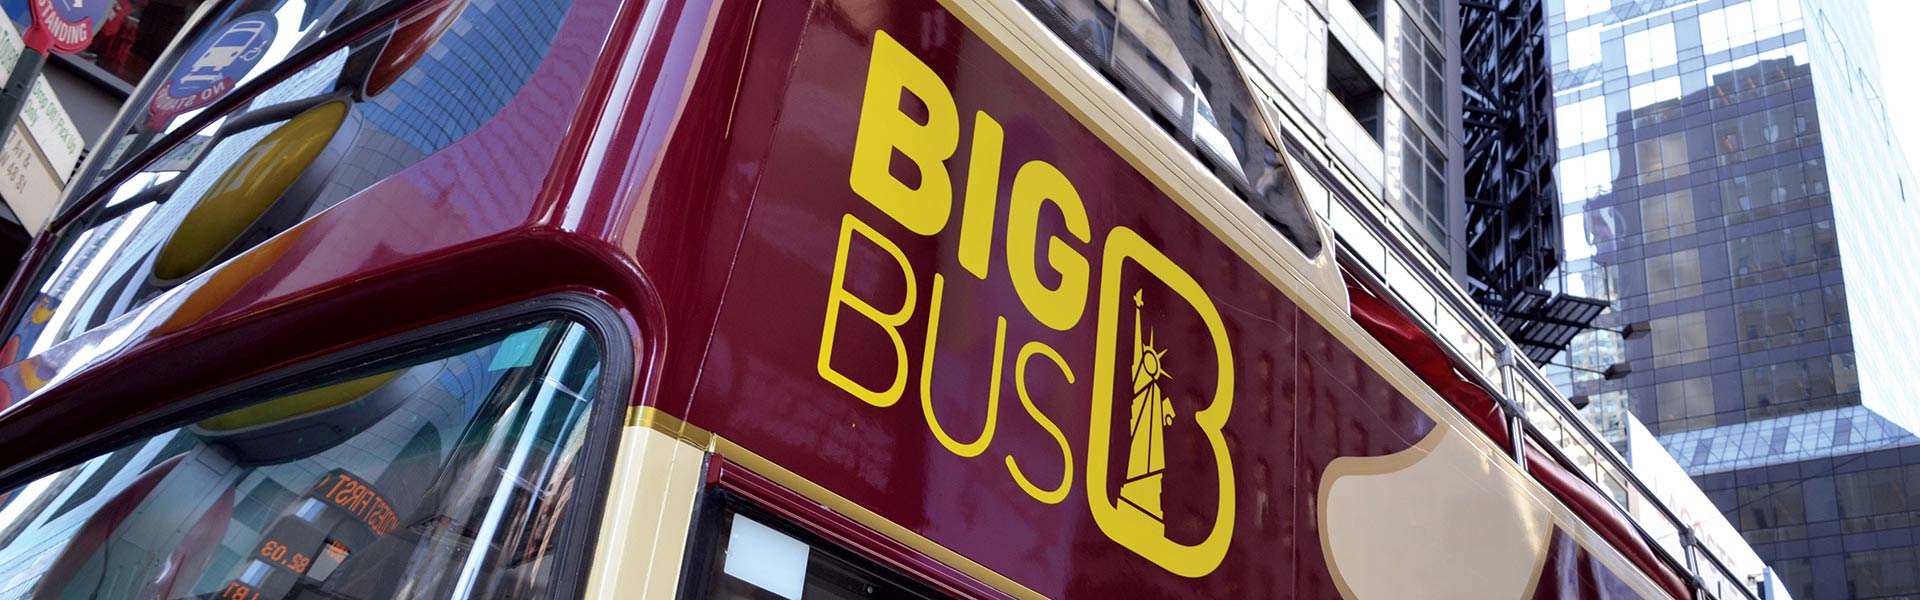 Tour en autobús descapotable de Big Bus en Nueva York